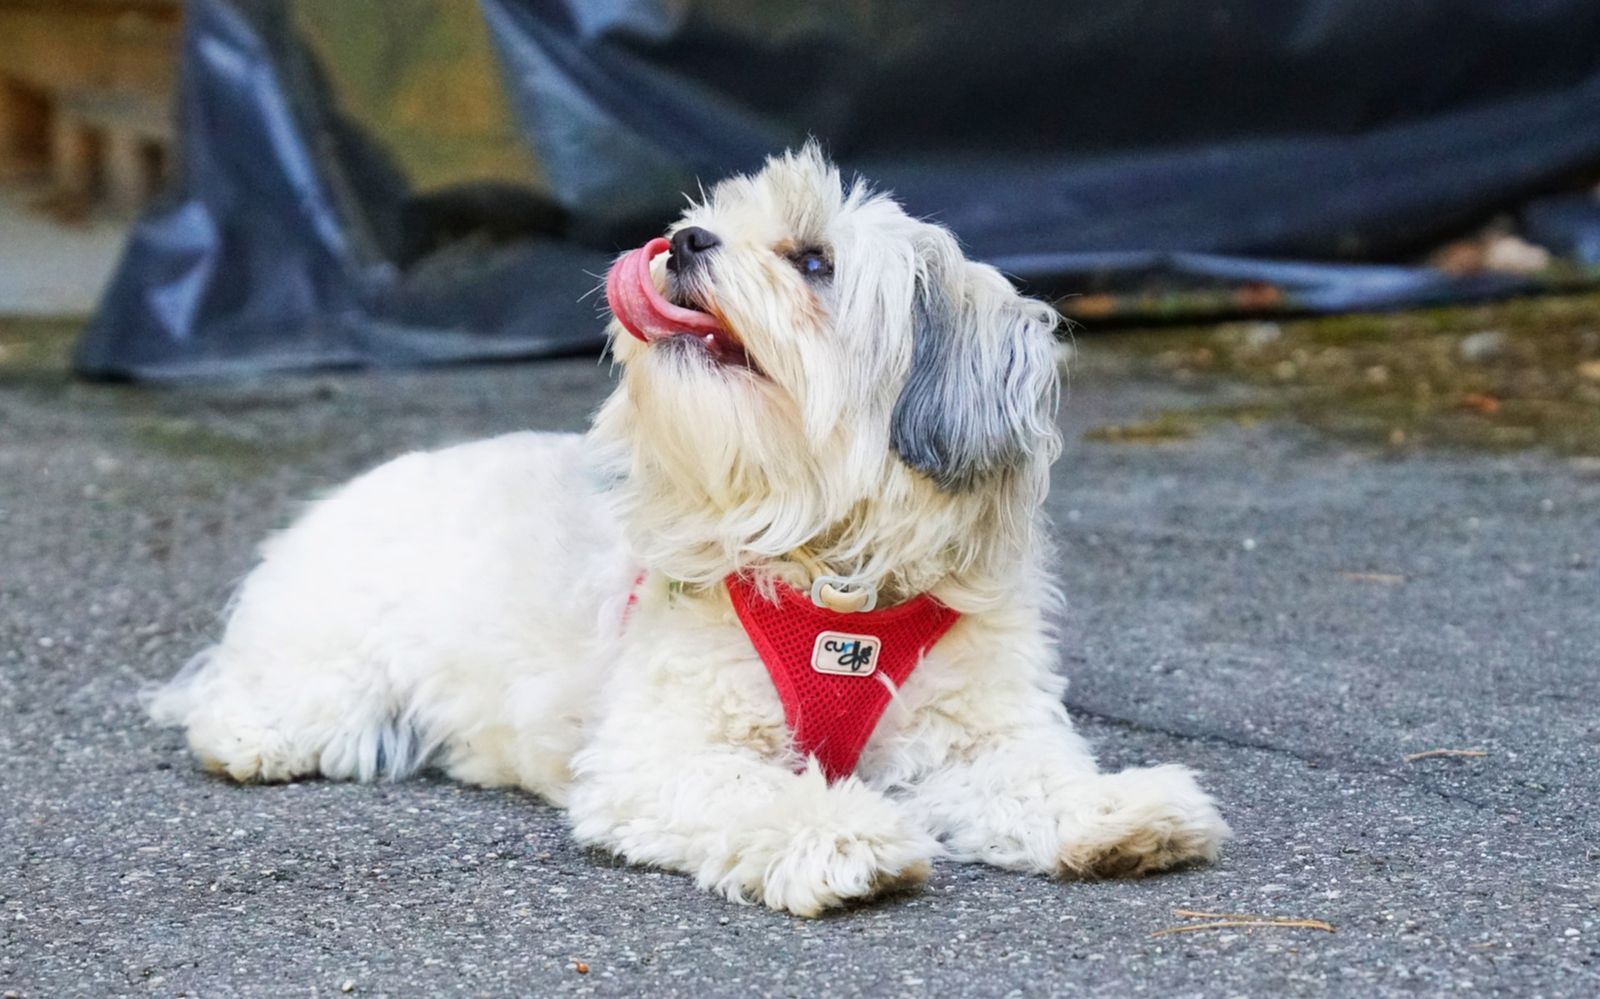 Ein kleiner weißer Hund mit rotem Hundegeschirr liegt mit herausgestreckter Zunge auf dem Asphaltboden und hebt den Kopf leicht schräg zum Betrachter in die Höhe